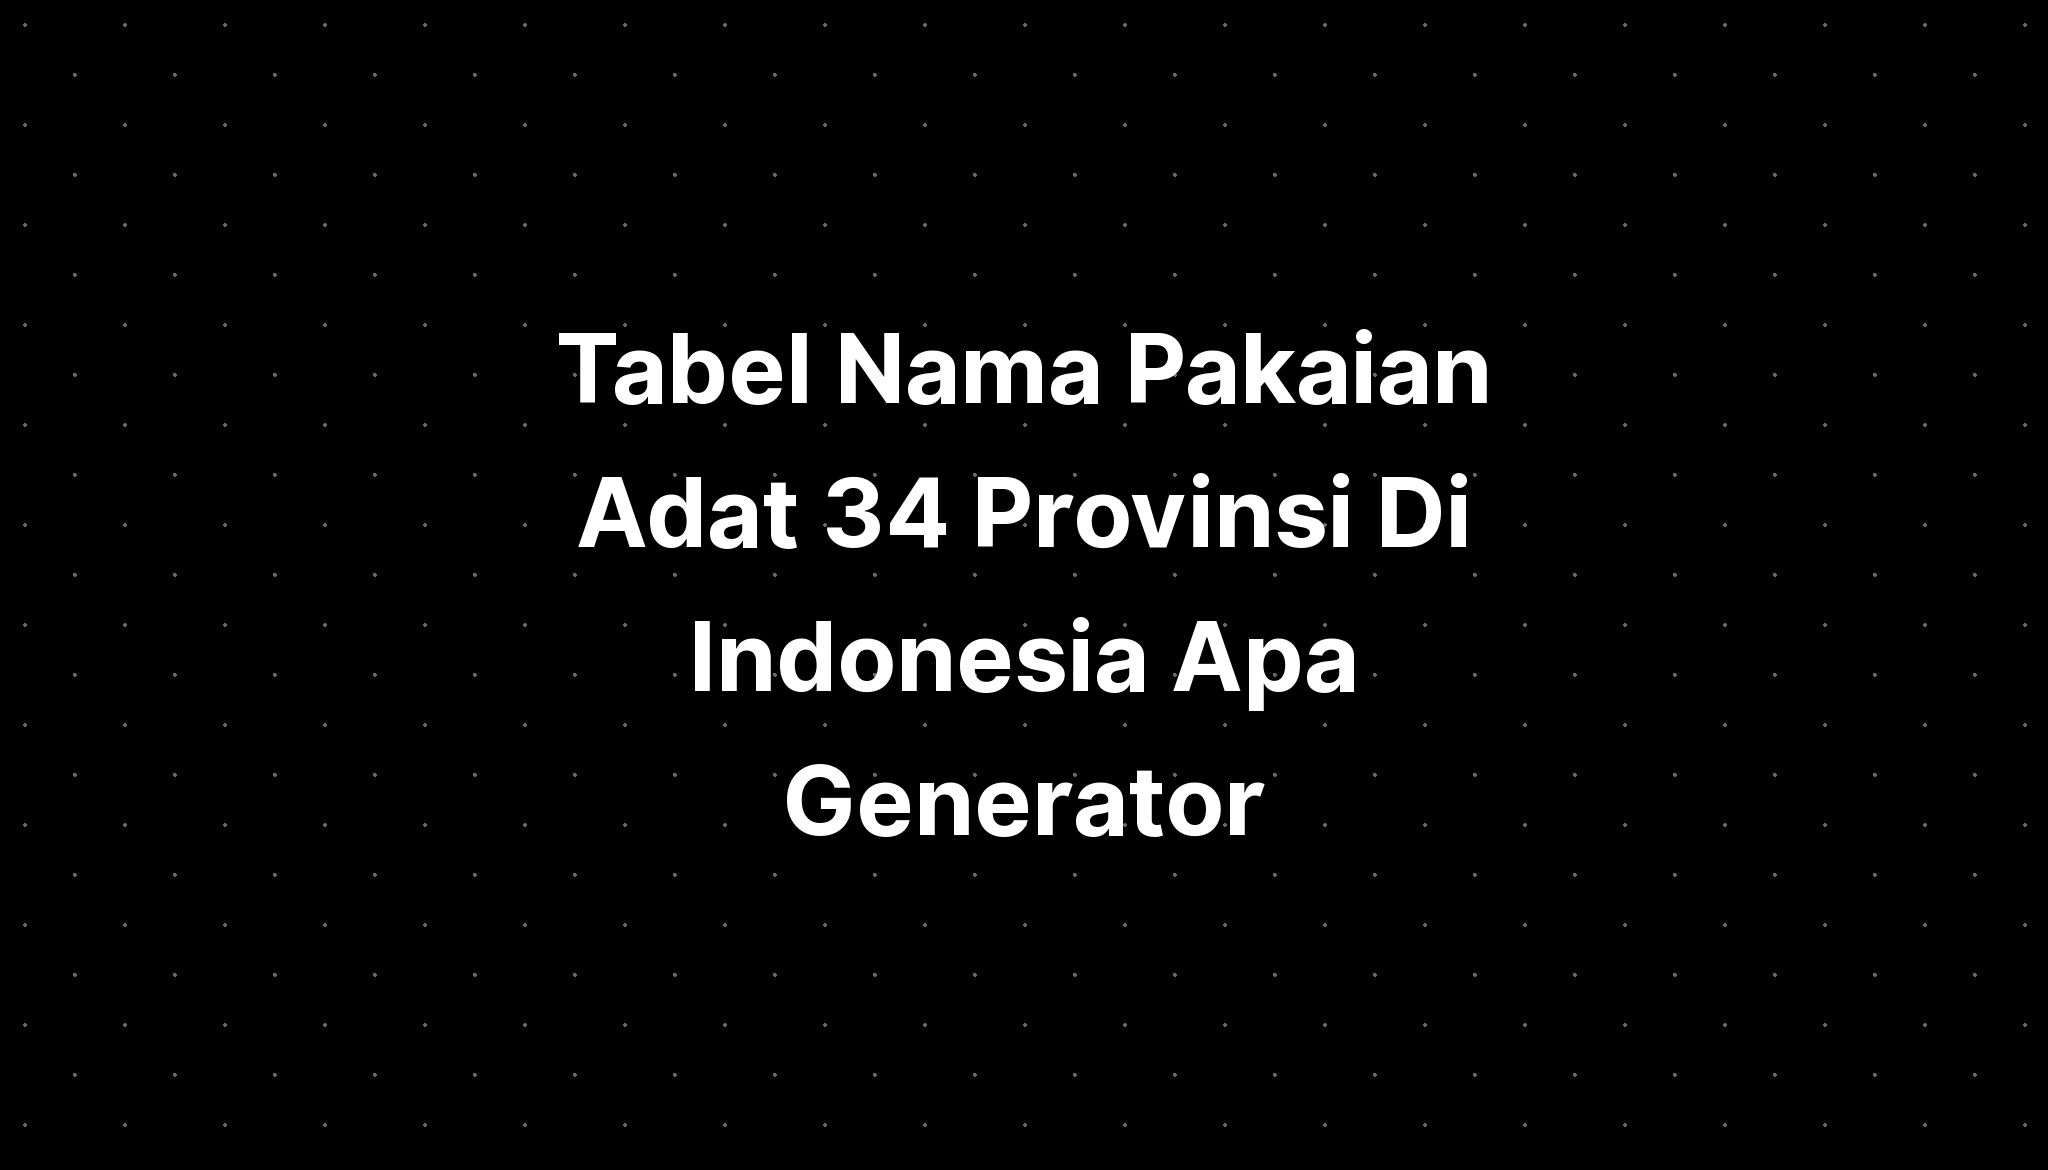 Tabel Nama Pakaian Adat 34 Provinsi Di Indonesia Apa Generator IMAGESEE